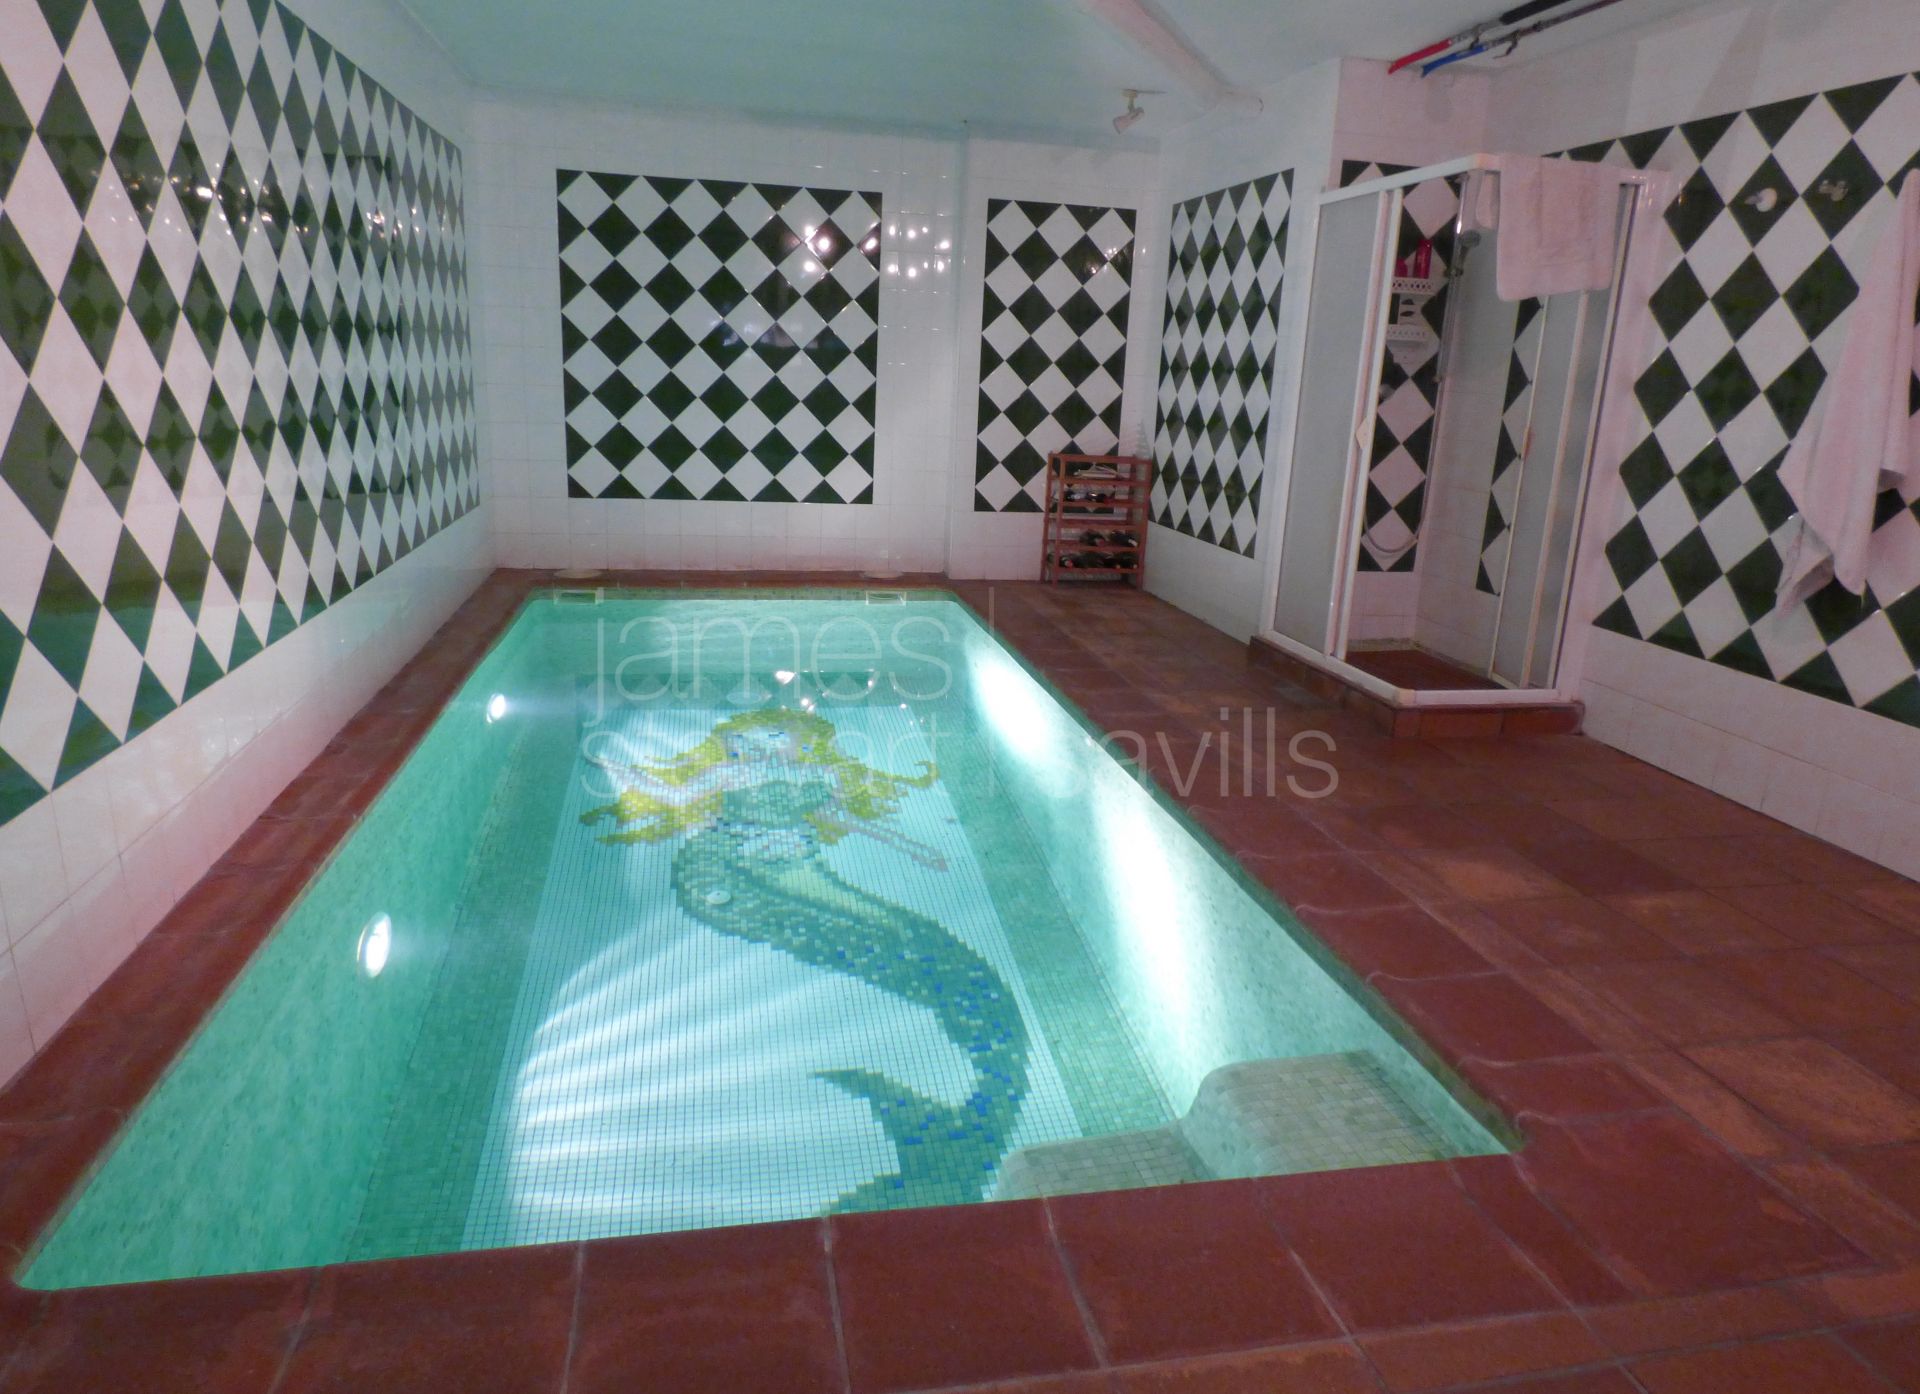 Villa de muy buena calidad con piscina interior